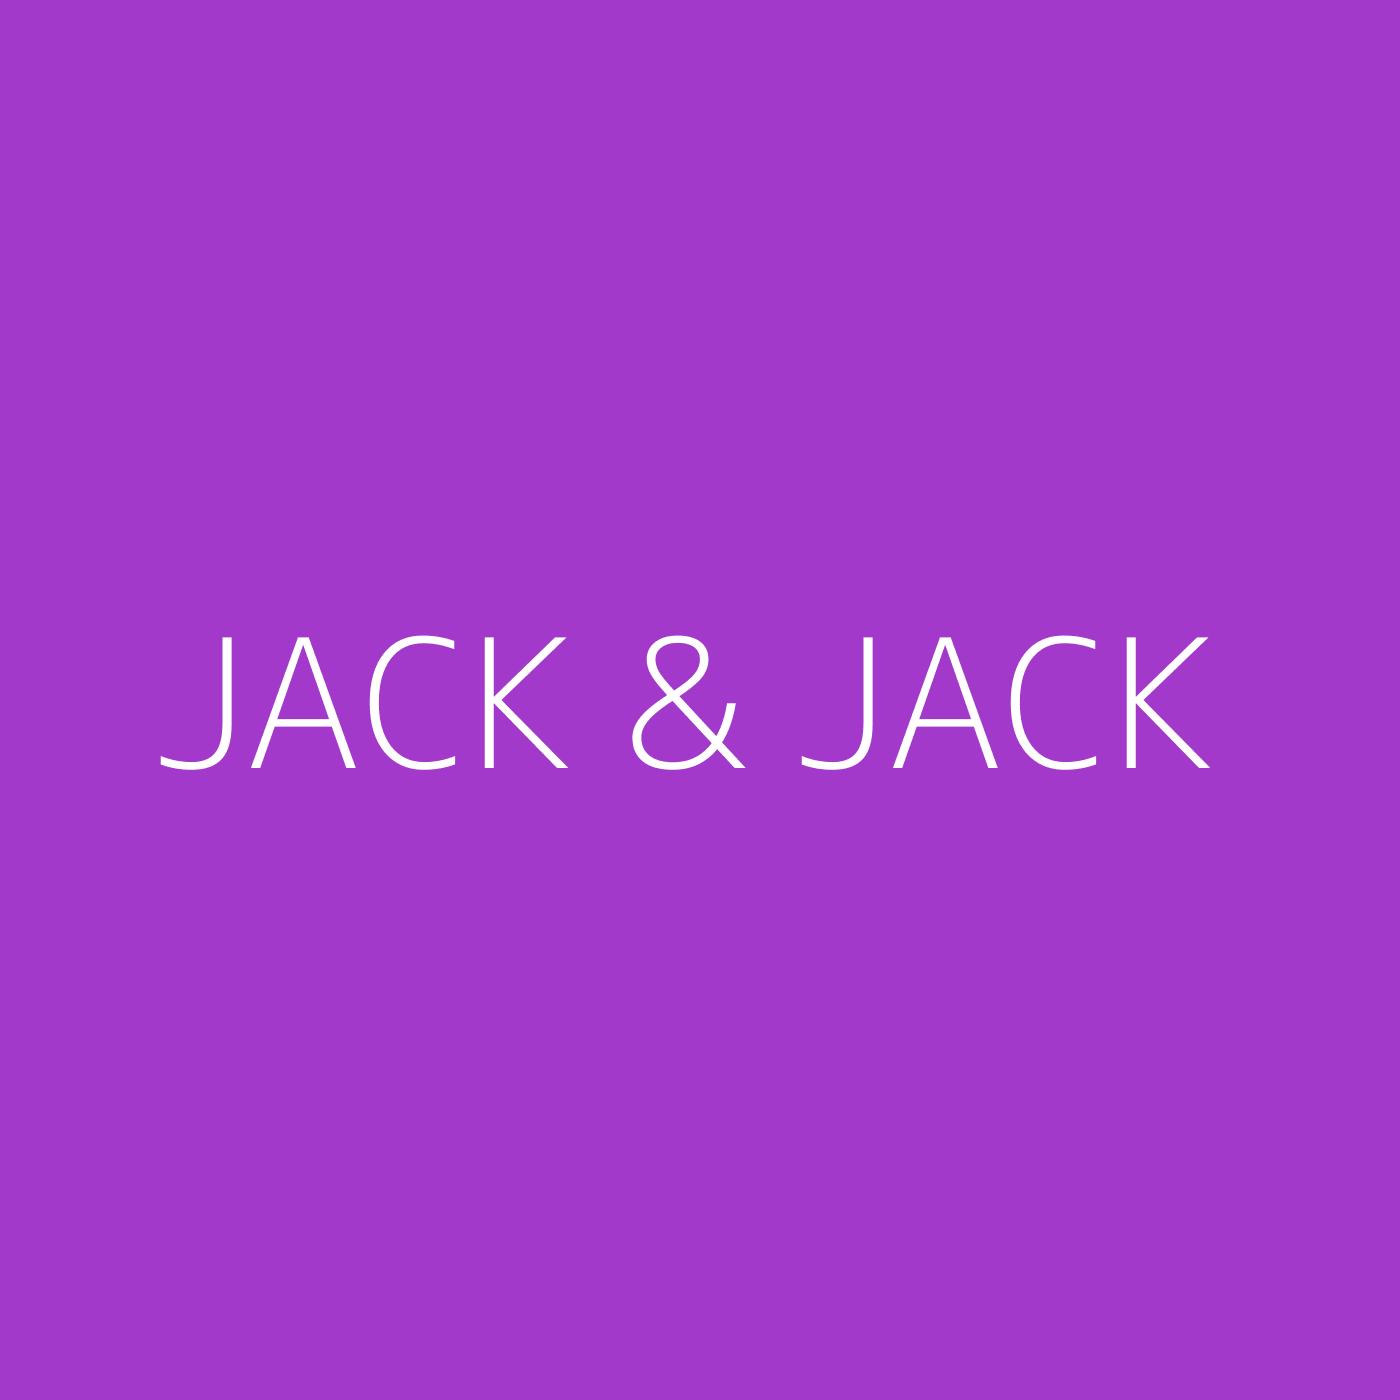 Jack & Jack Playlist Artwork